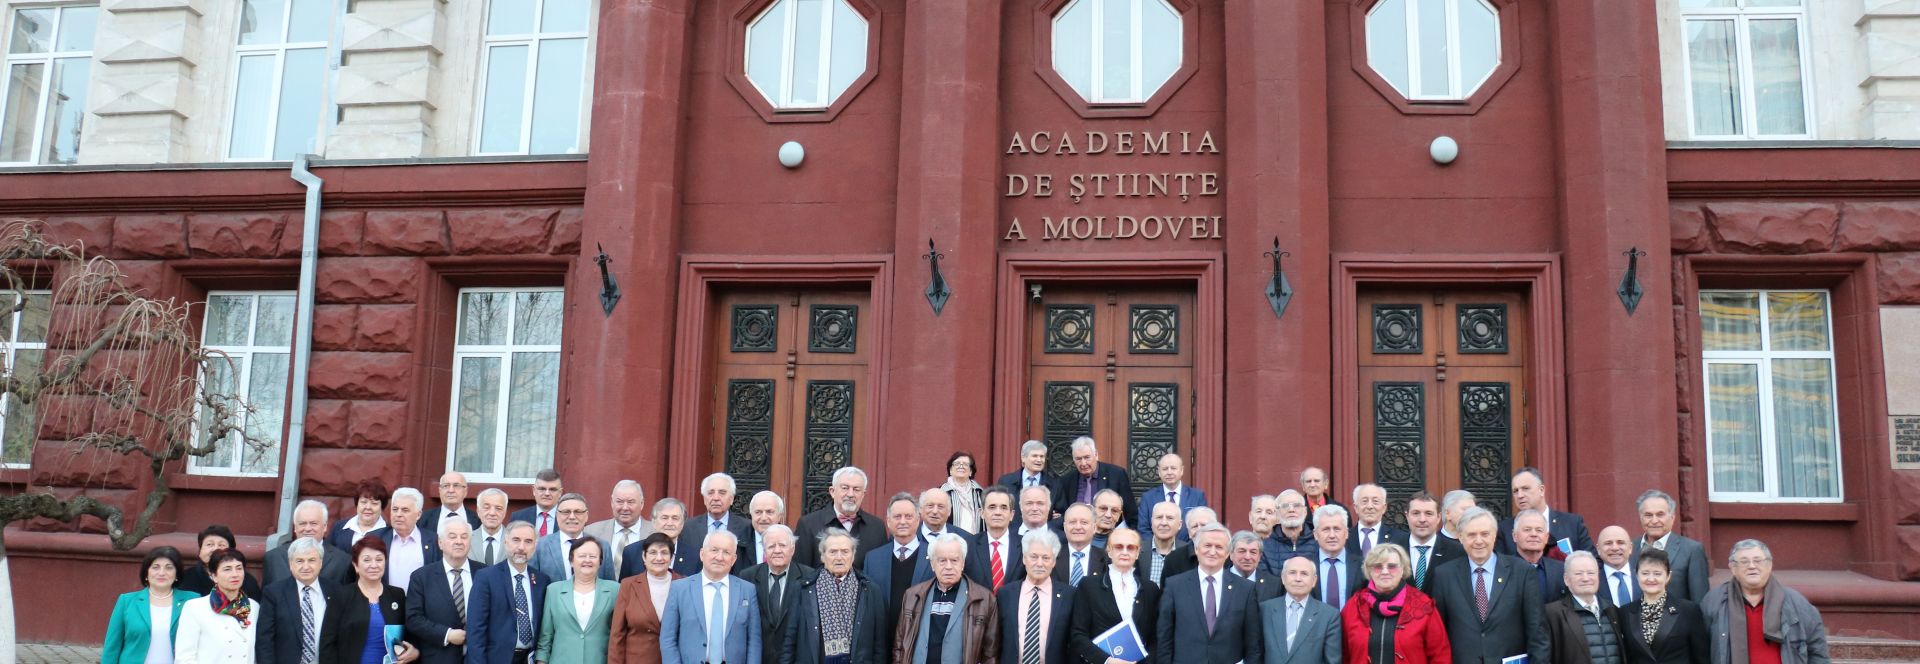 membri corespondenți ai Academiei de Științe a Moldovei